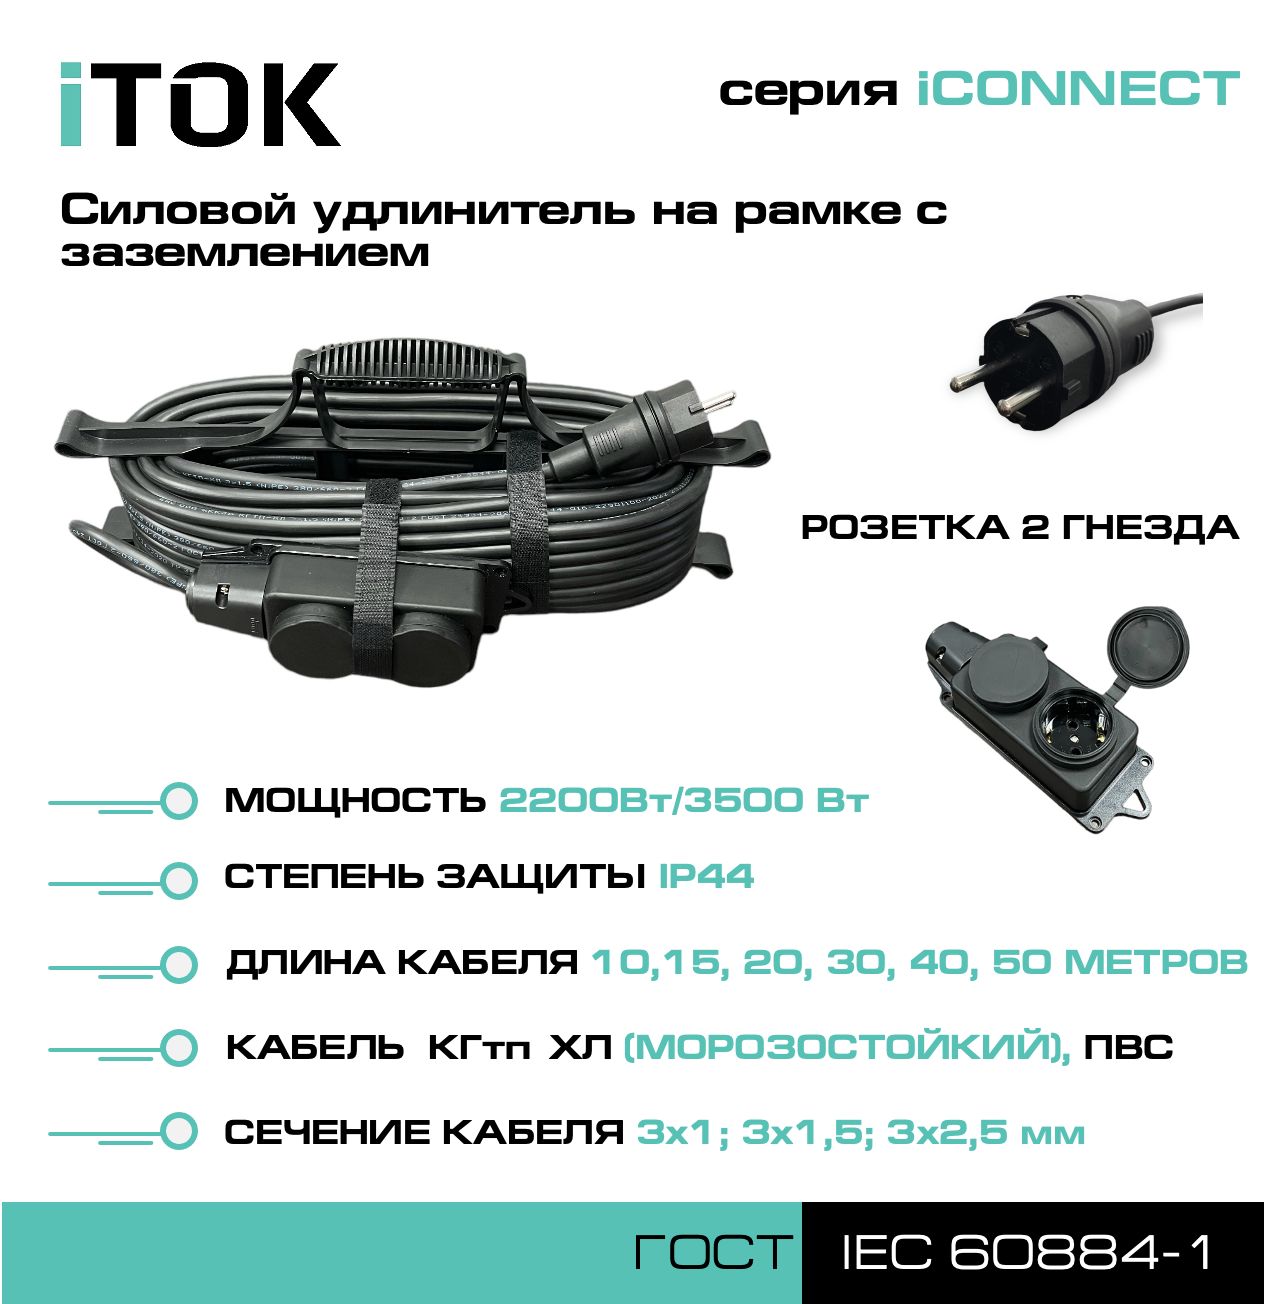 Удлинитель на рамке с заземлением серии iTOK iCONNECT ПВС 3х2,5 мм 2 гнезда IP44 10 м